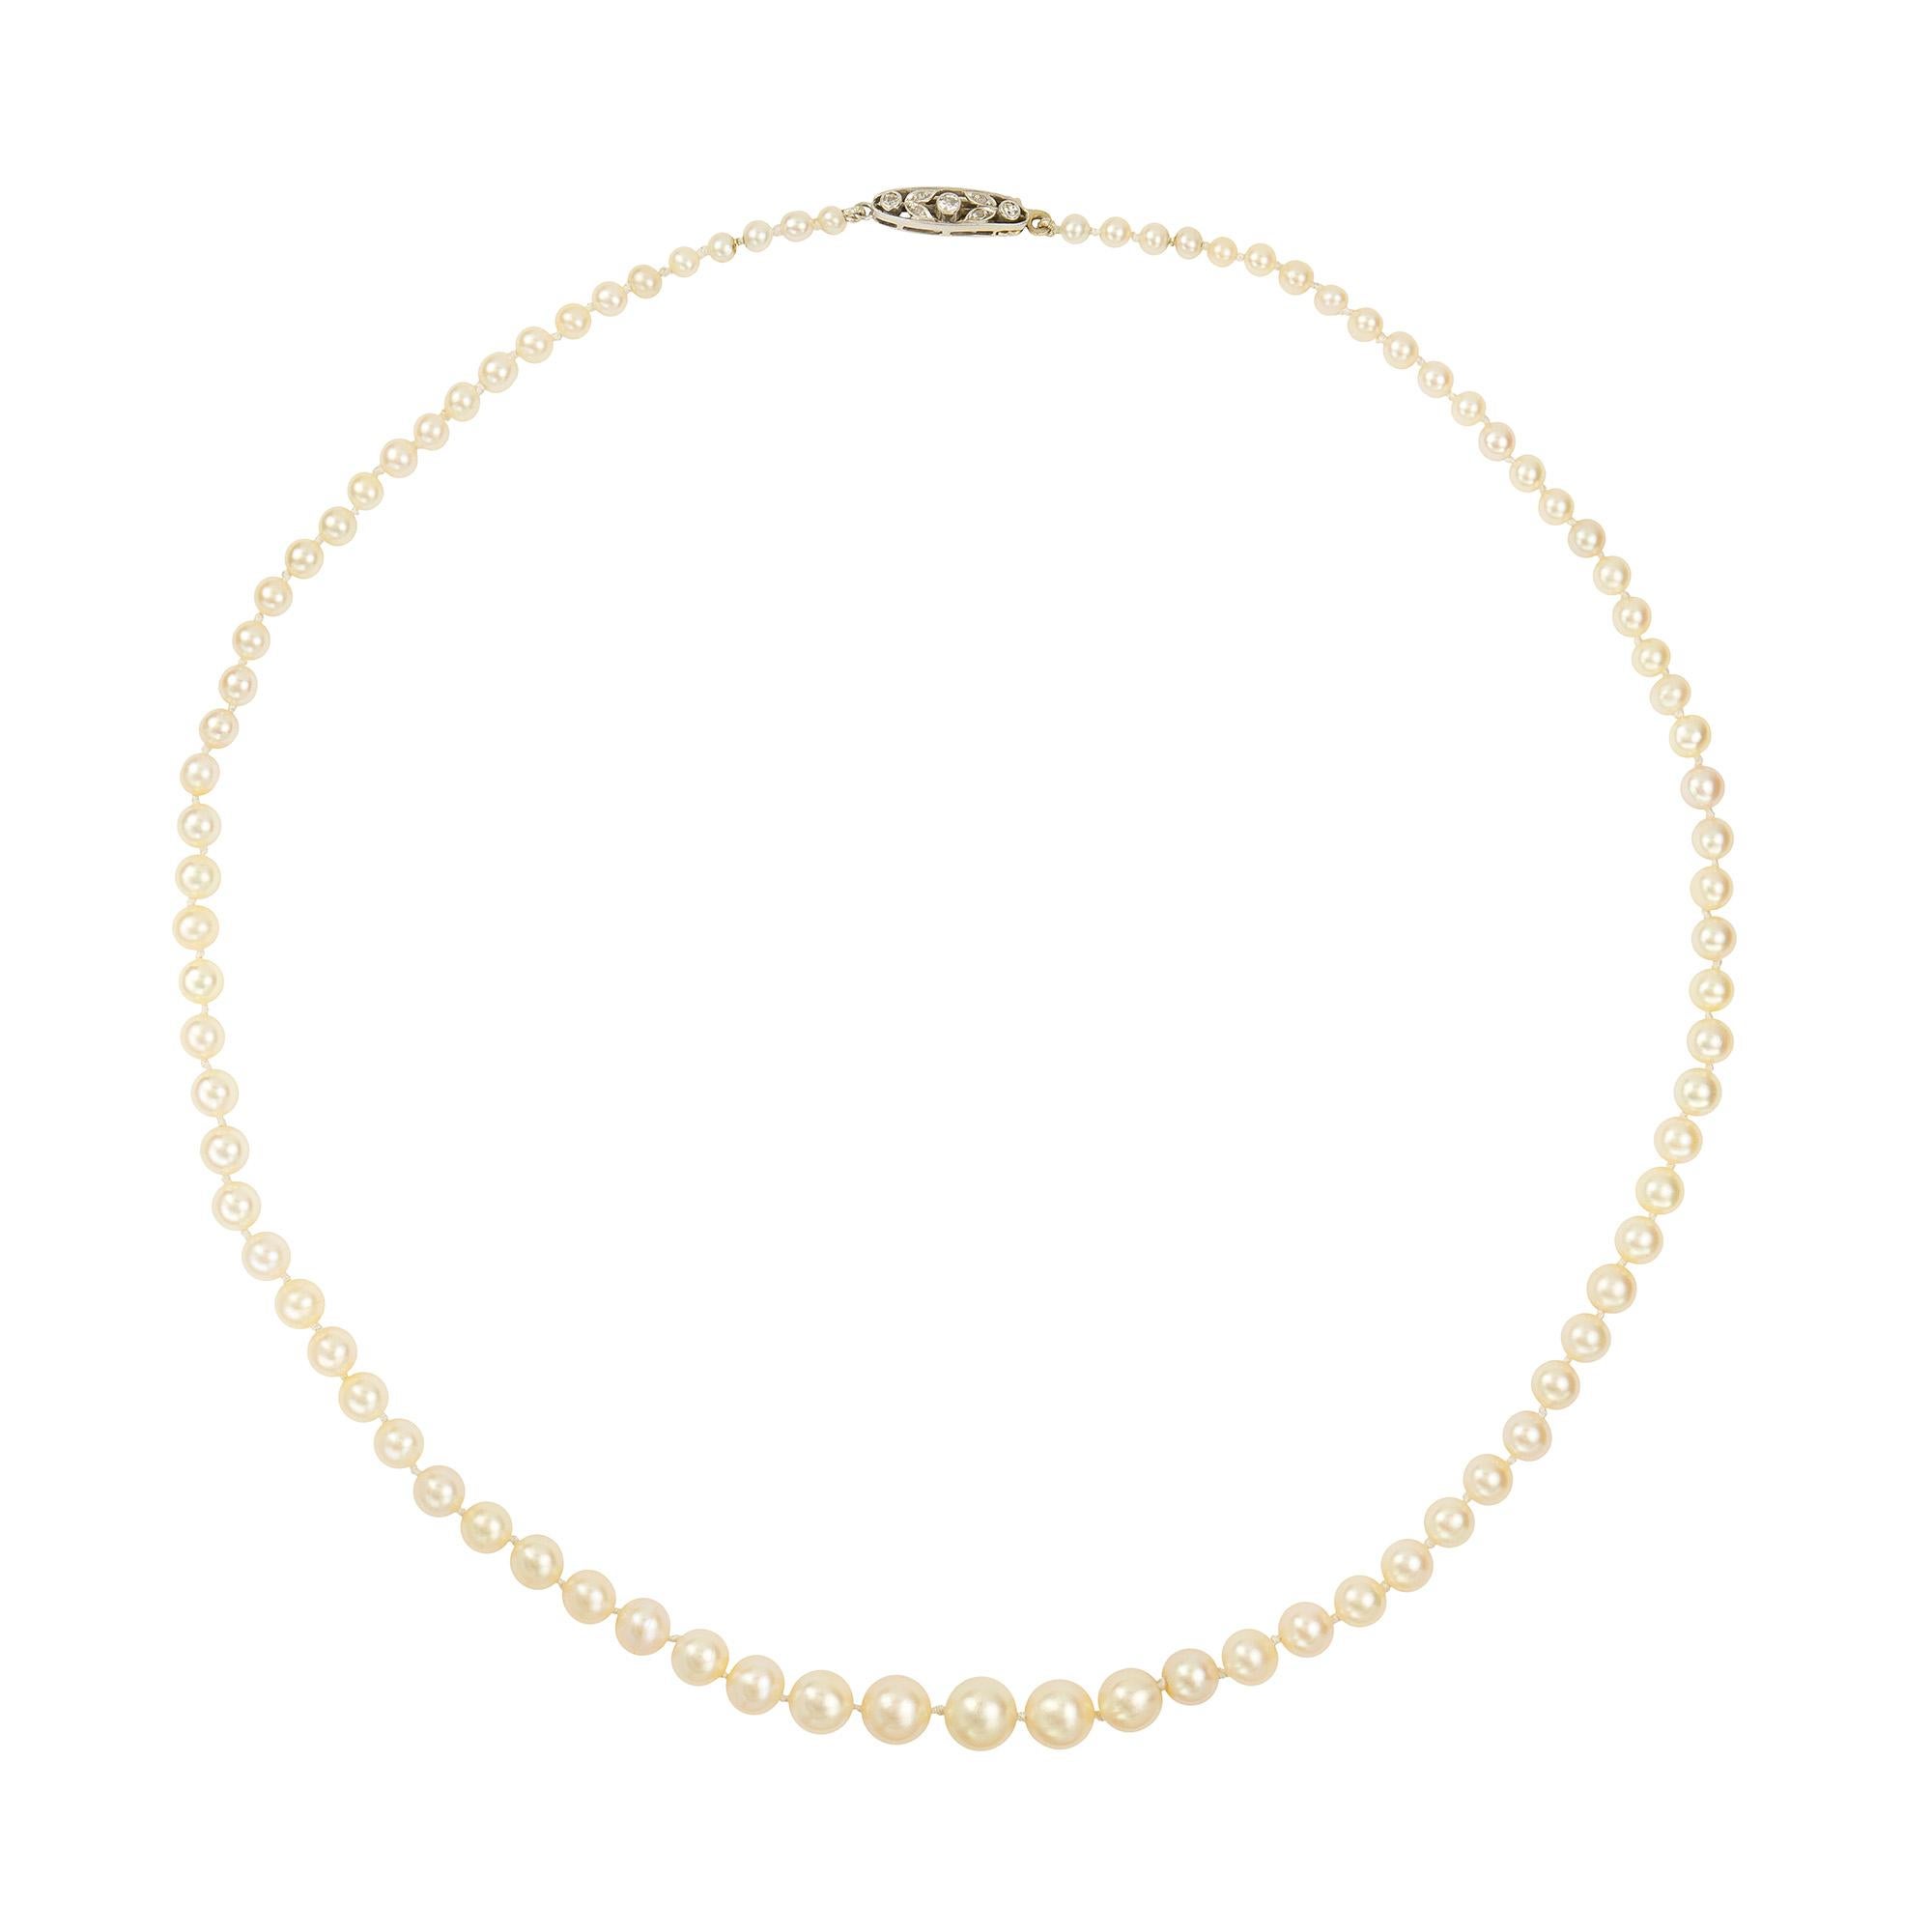 Collier de perles naturelles, composé de quatre-vingt-huit perles naturelles graduées allant de 3,25 mm de diamètre à 7,8 mm, avec certificat EE, avec fermoir feuillagé serti de diamants et chaîne de sécurité, vers 1910. 
Poids brut 17,28